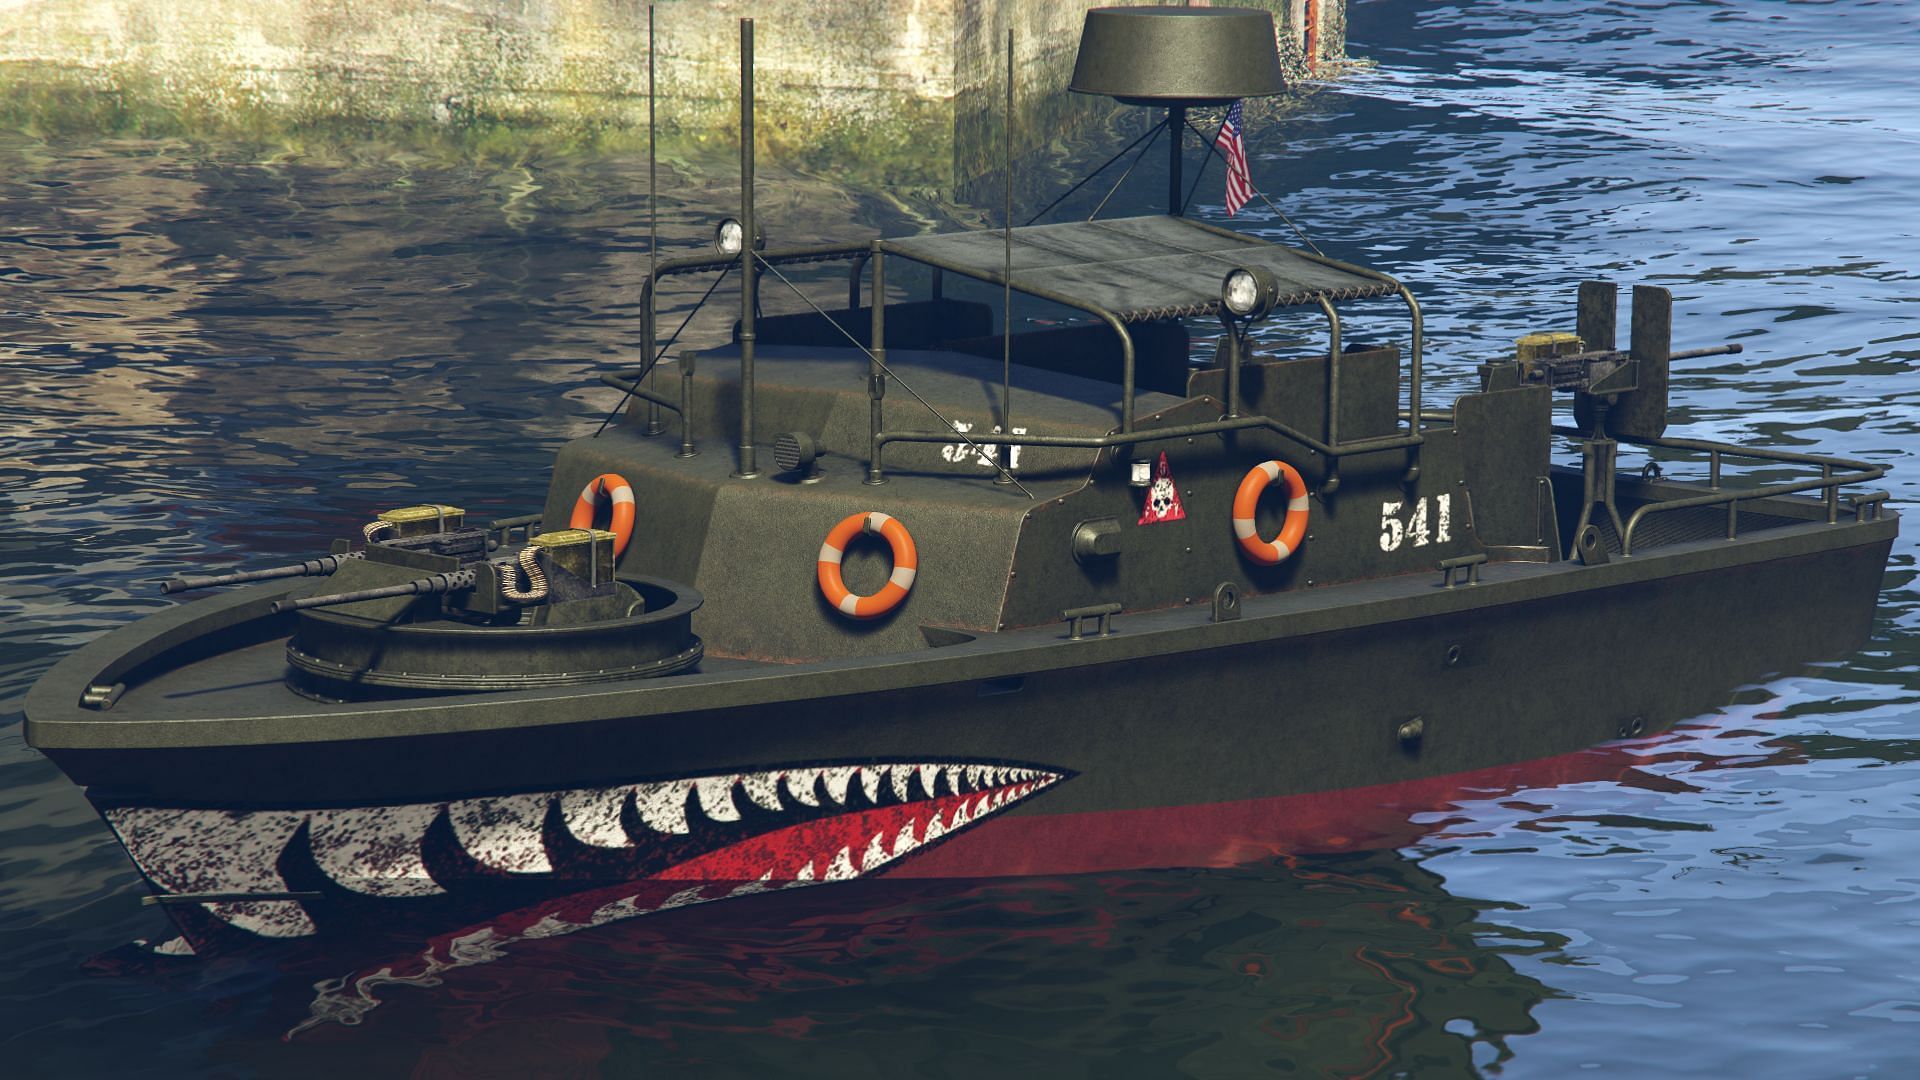 A 31 Patrol Boat (Image via GTA Wiki)